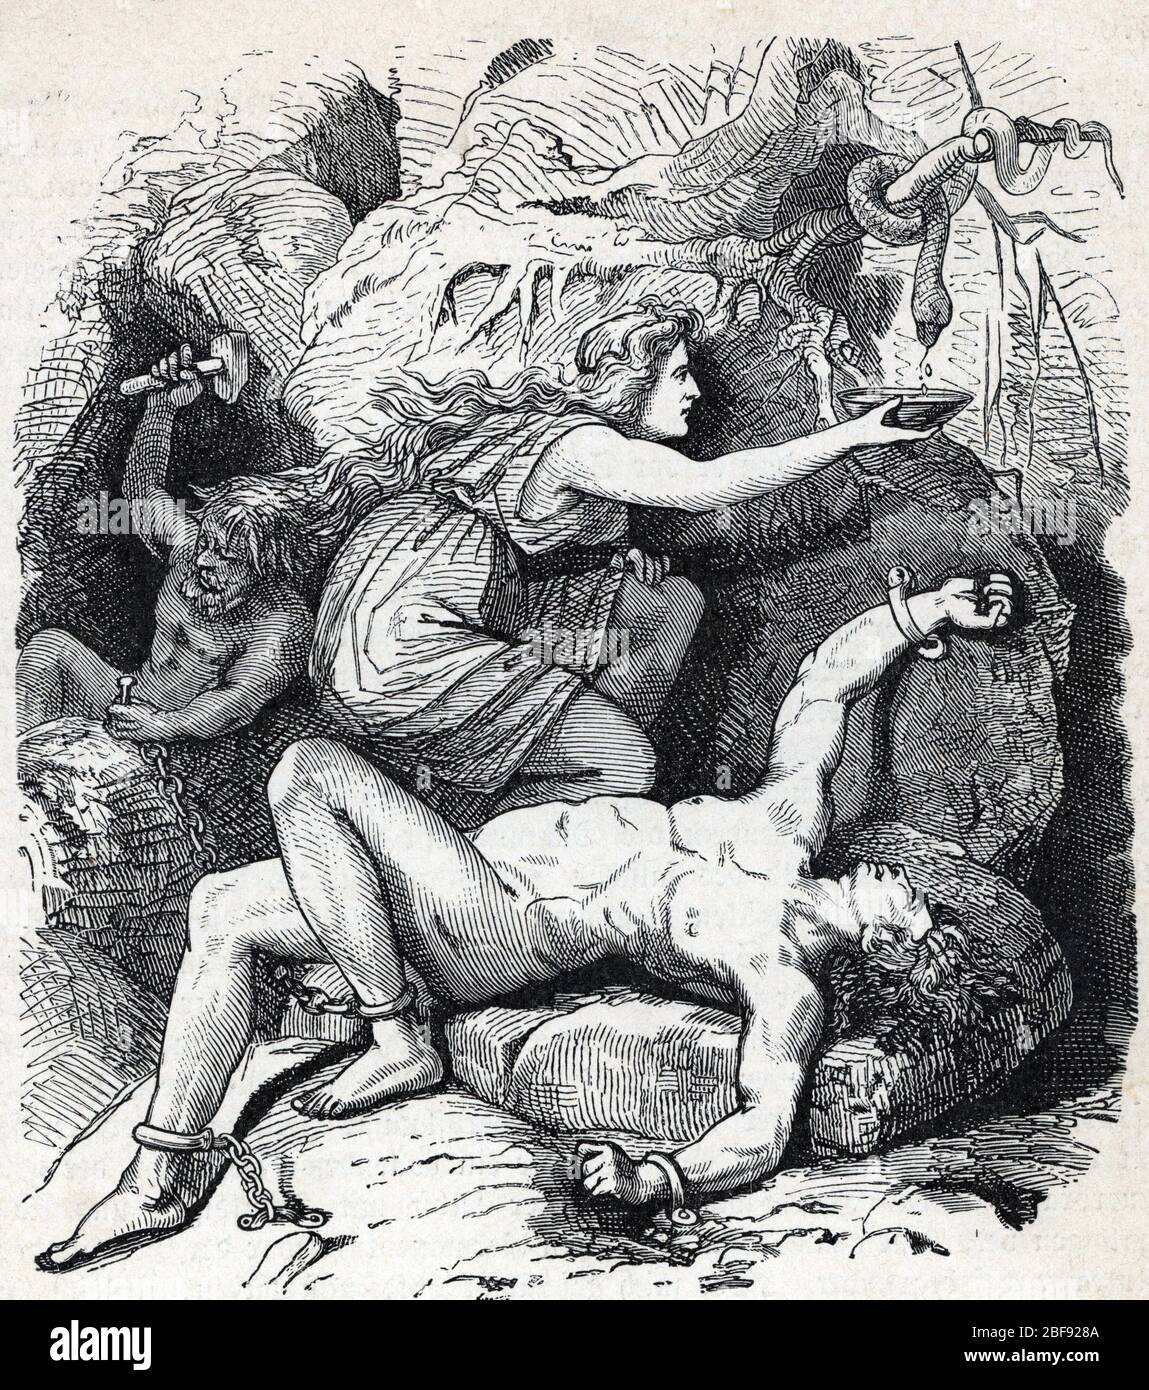 Mythologie nordique : le supplice de Loki enchâine avec un serpent au dessus du dessus de son visage (mythologie norse : la punition de Loki) Gravure tiree de Banque D'Images